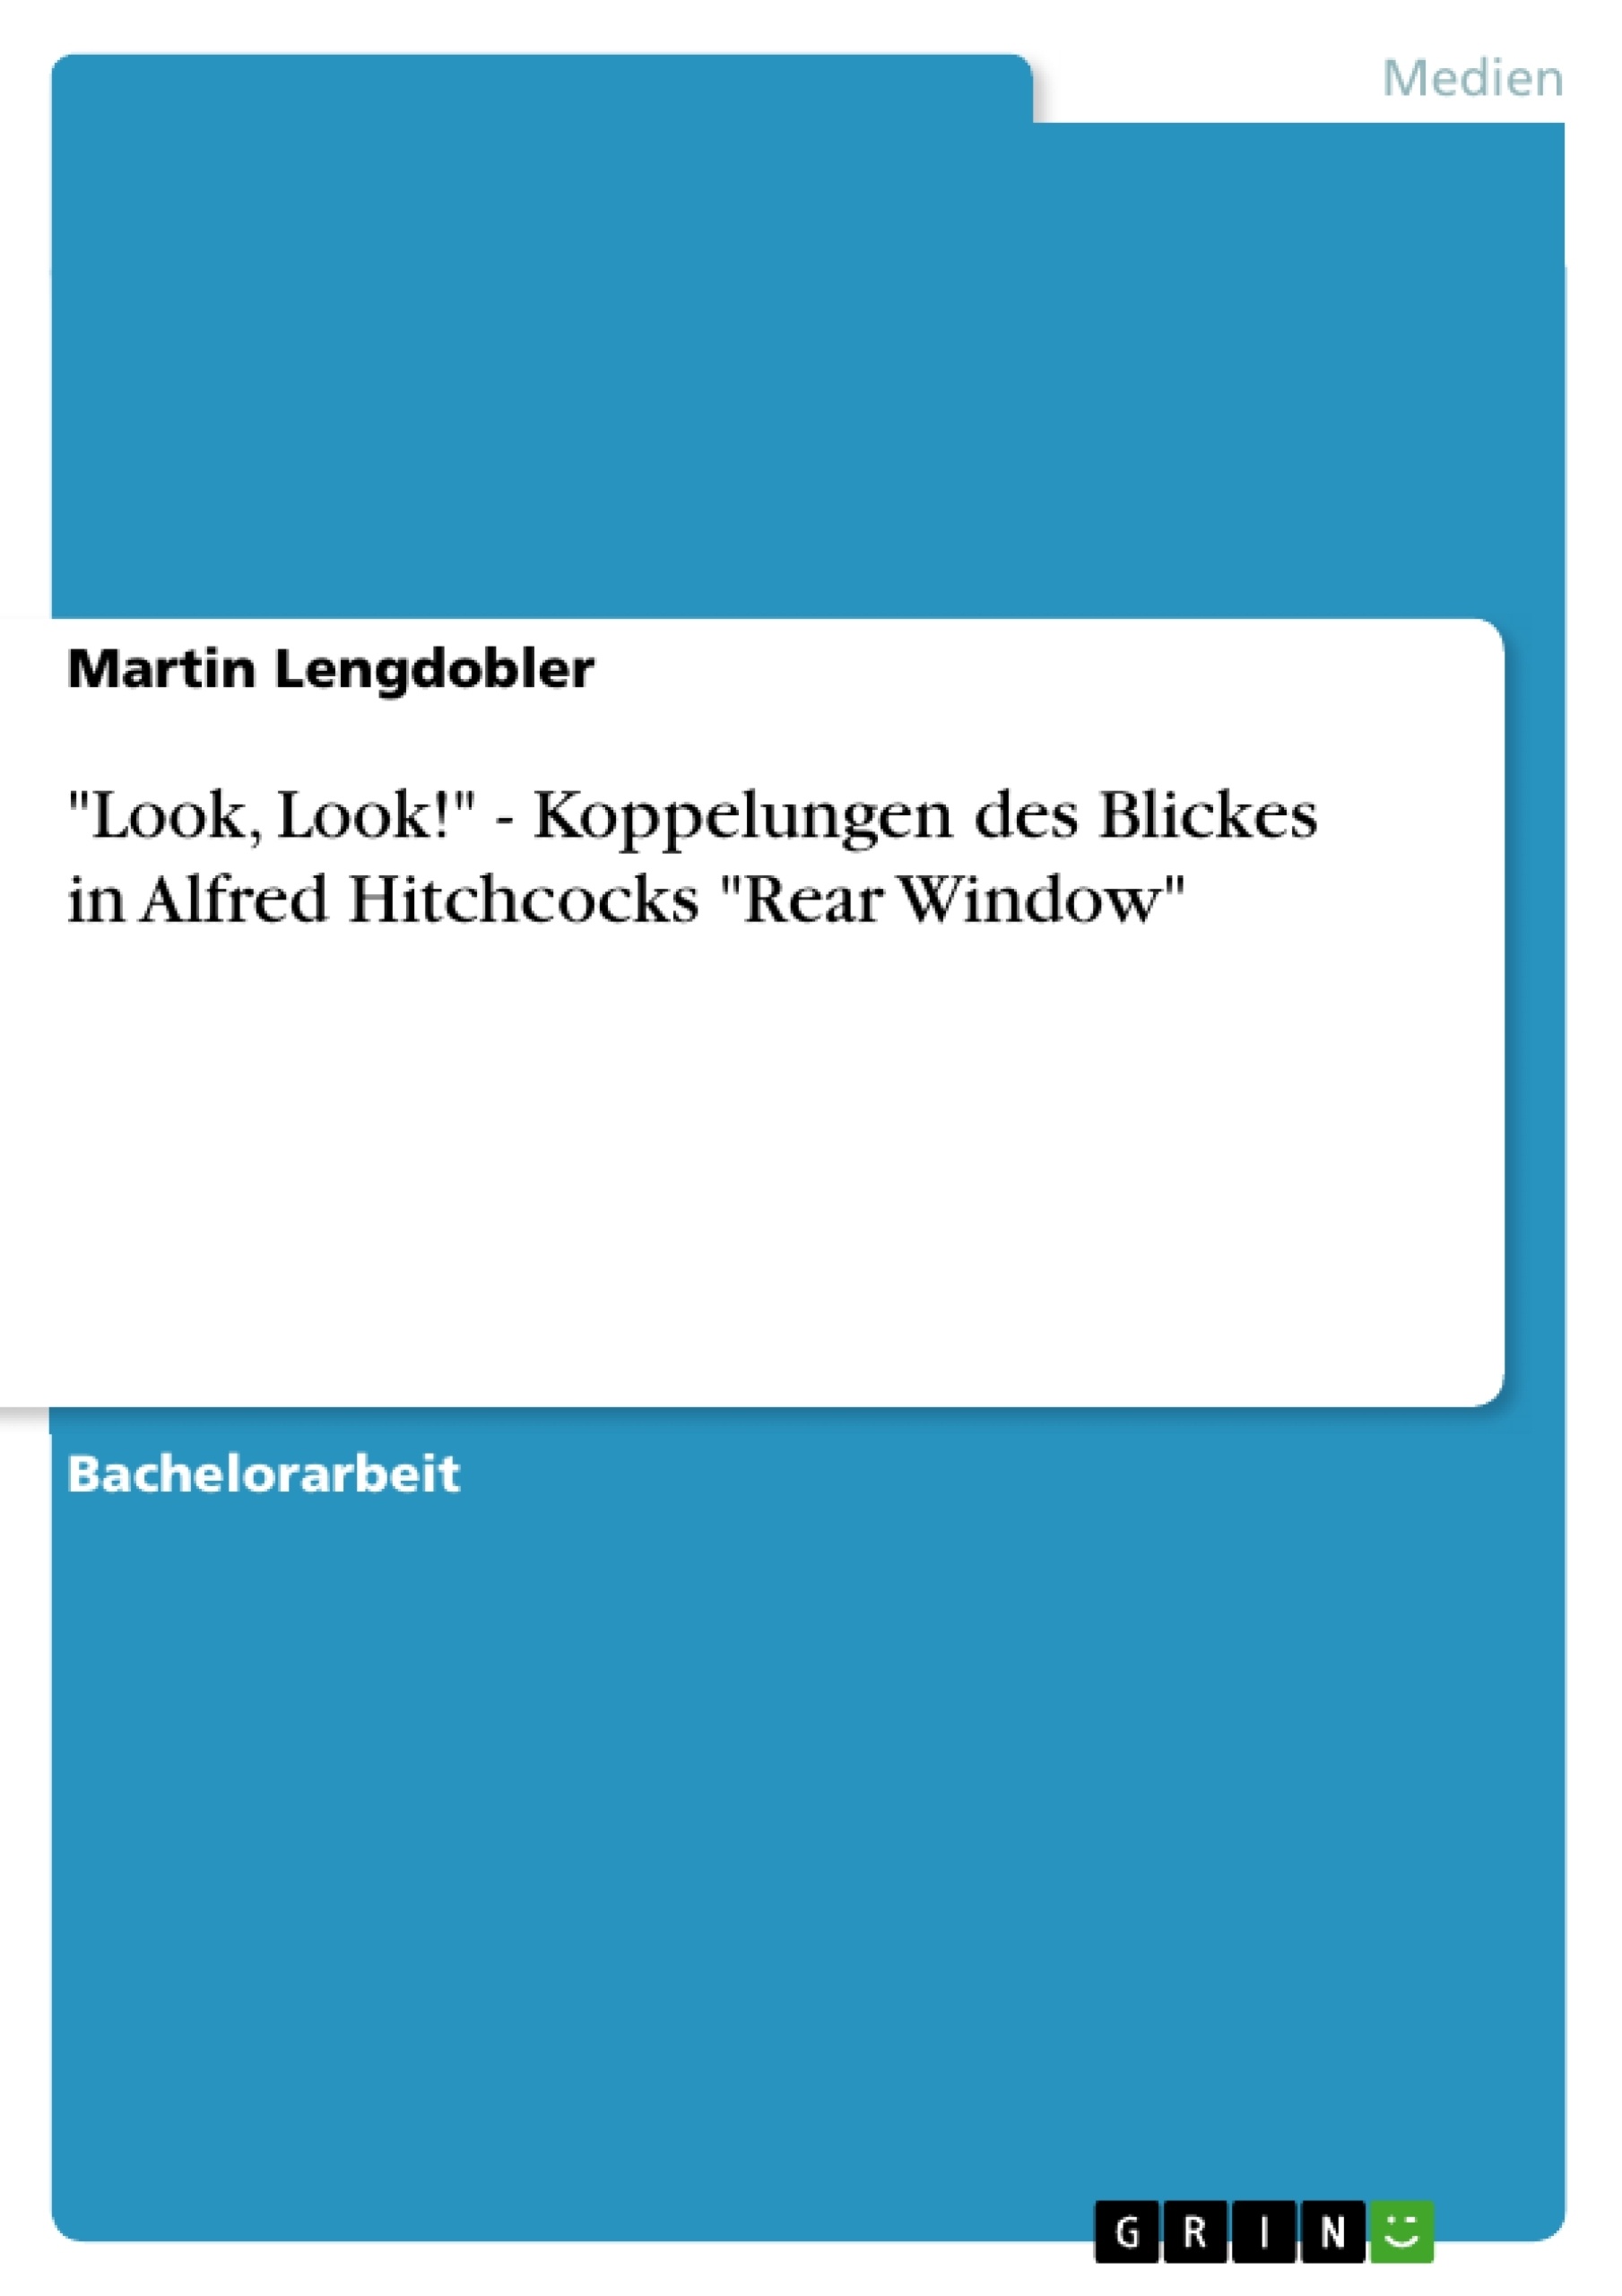 Titel: "Look, Look!" - Koppelungen des Blickes in Alfred Hitchcocks "Rear Window"